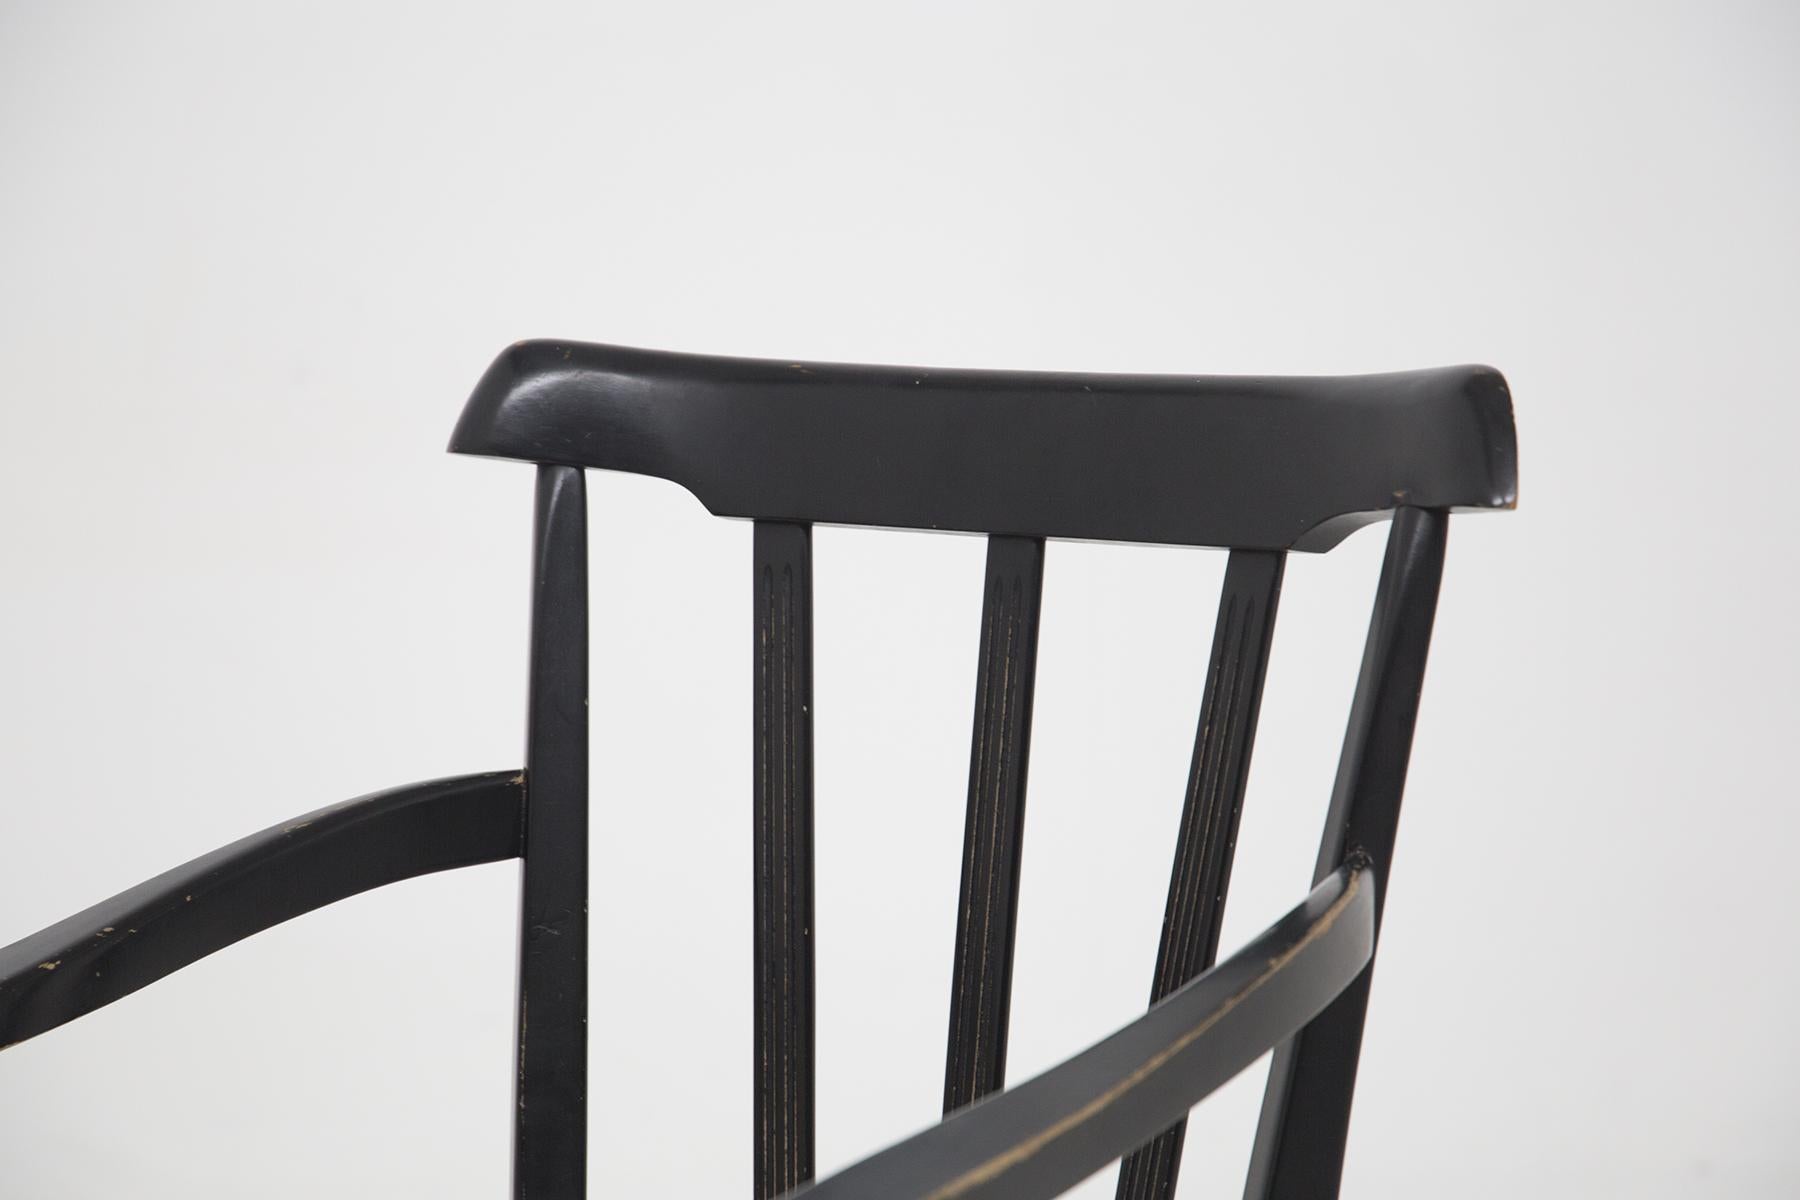 Wunderschönes Paar italienischer Holz- und Ledersessel aus den 1950er Jahren, feine italienische Handwerkskunst.
Die Sessel haben eine sehr schöne, vollständig aus schwarzem Holz gefertigte Struktur. Der Sitz ist aus weißem Leder gefertigt, sehr